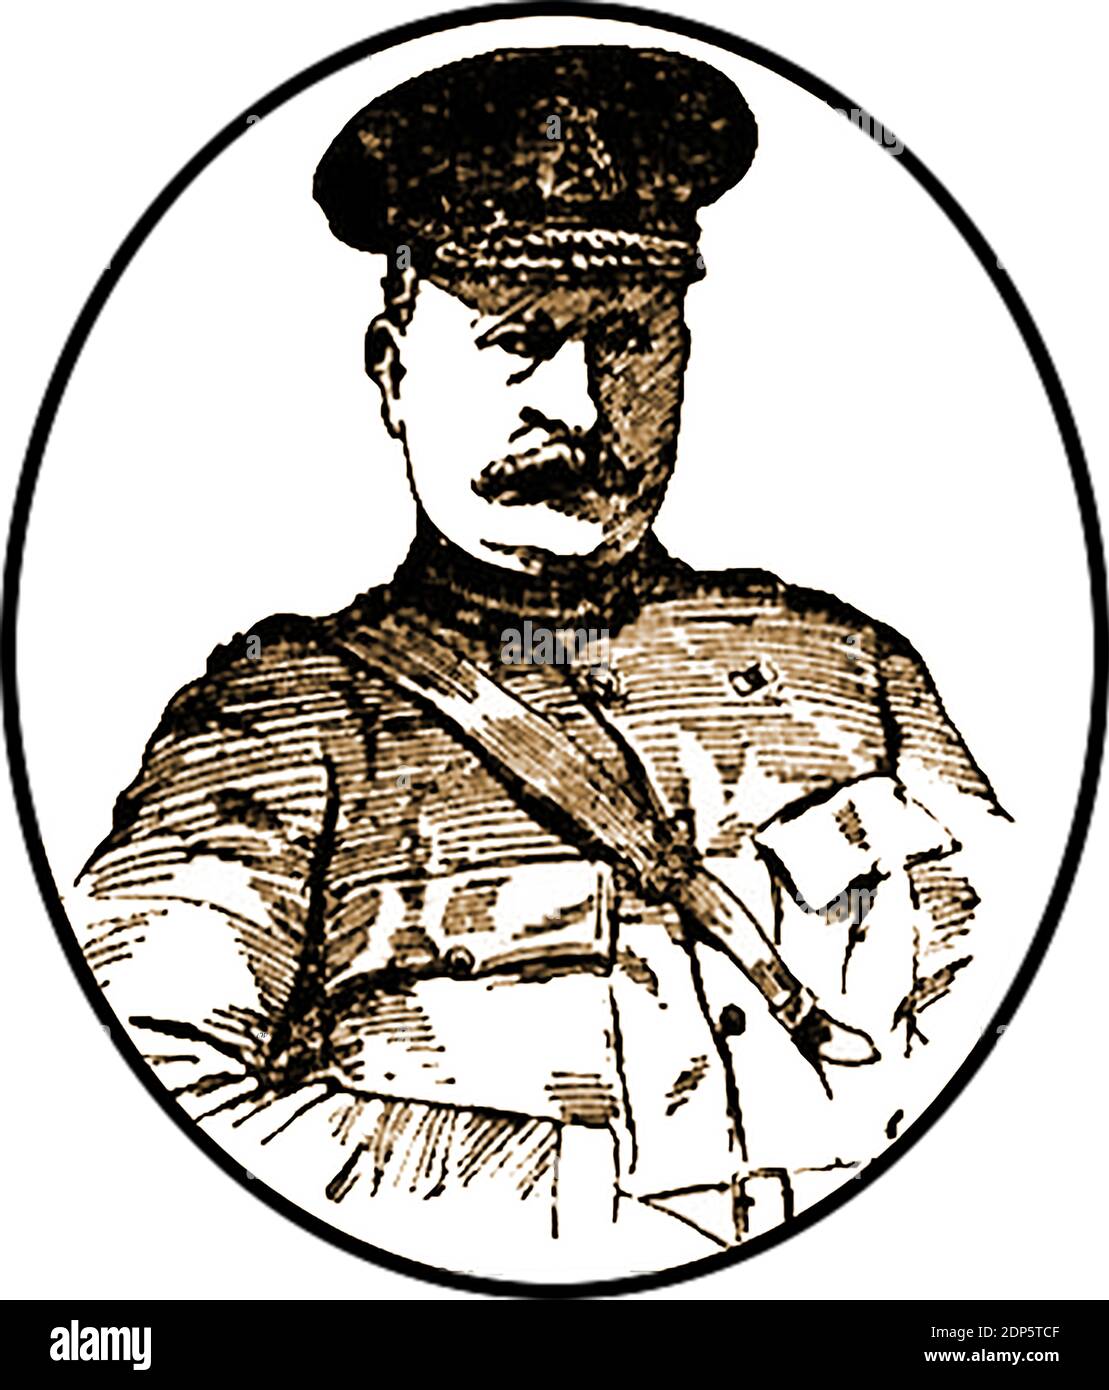 Un portrait du major général (lieutenant général) Charles Edmond KNOX (1845-1938) de la renommée de la guerre de Boer; comme il était en 1900. Il était un soldat anglo-irlandais de l'armée britannique. HS surnom était Nice Knozx. Ses commandes comprenaient l'infanterie légère du Shropshire du roi, la 13e brigade d'infanterie et la 4e division d'infanterie. Il a reçu le poste de gouverneur des Bermudes, mais il l'a refusé et est devenu membre du Club naval et militaire. Il était le fils de Robert KNOX, DD, Archevêque d'Armagh Banque D'Images